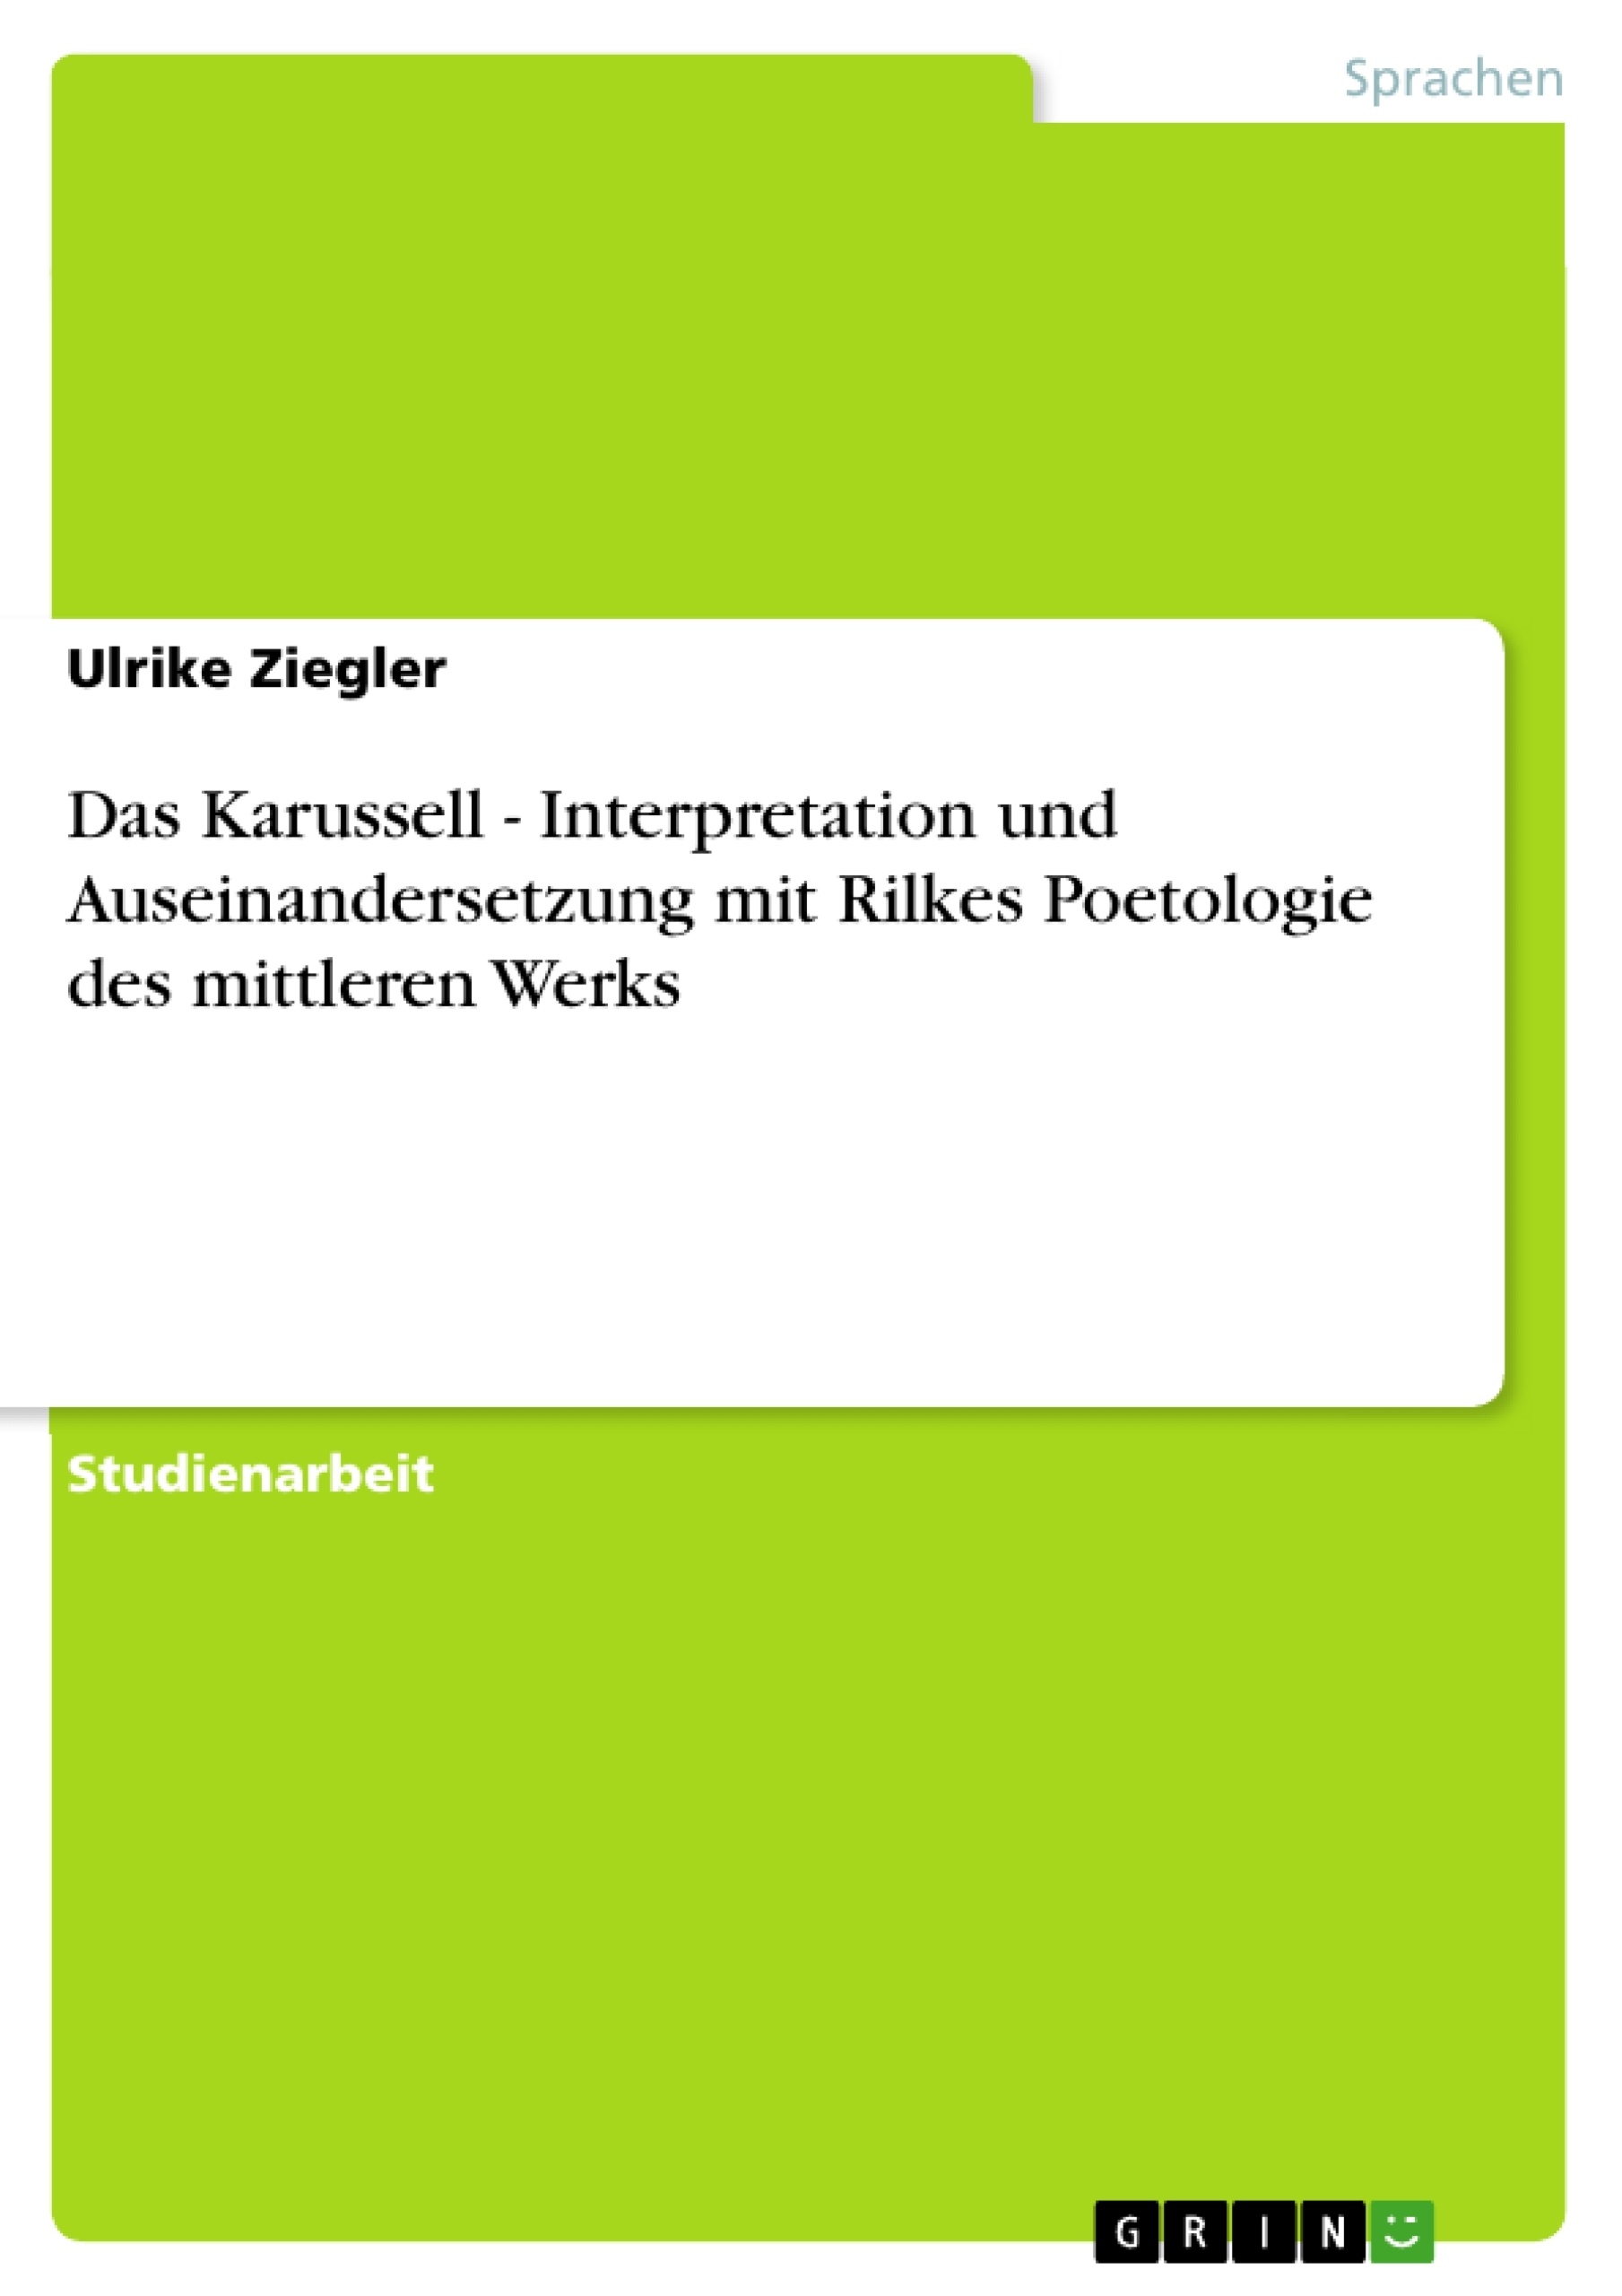 Title: Das Karussell - Interpretation und Auseinandersetzung mit Rilkes Poetologie des mittleren Werks  